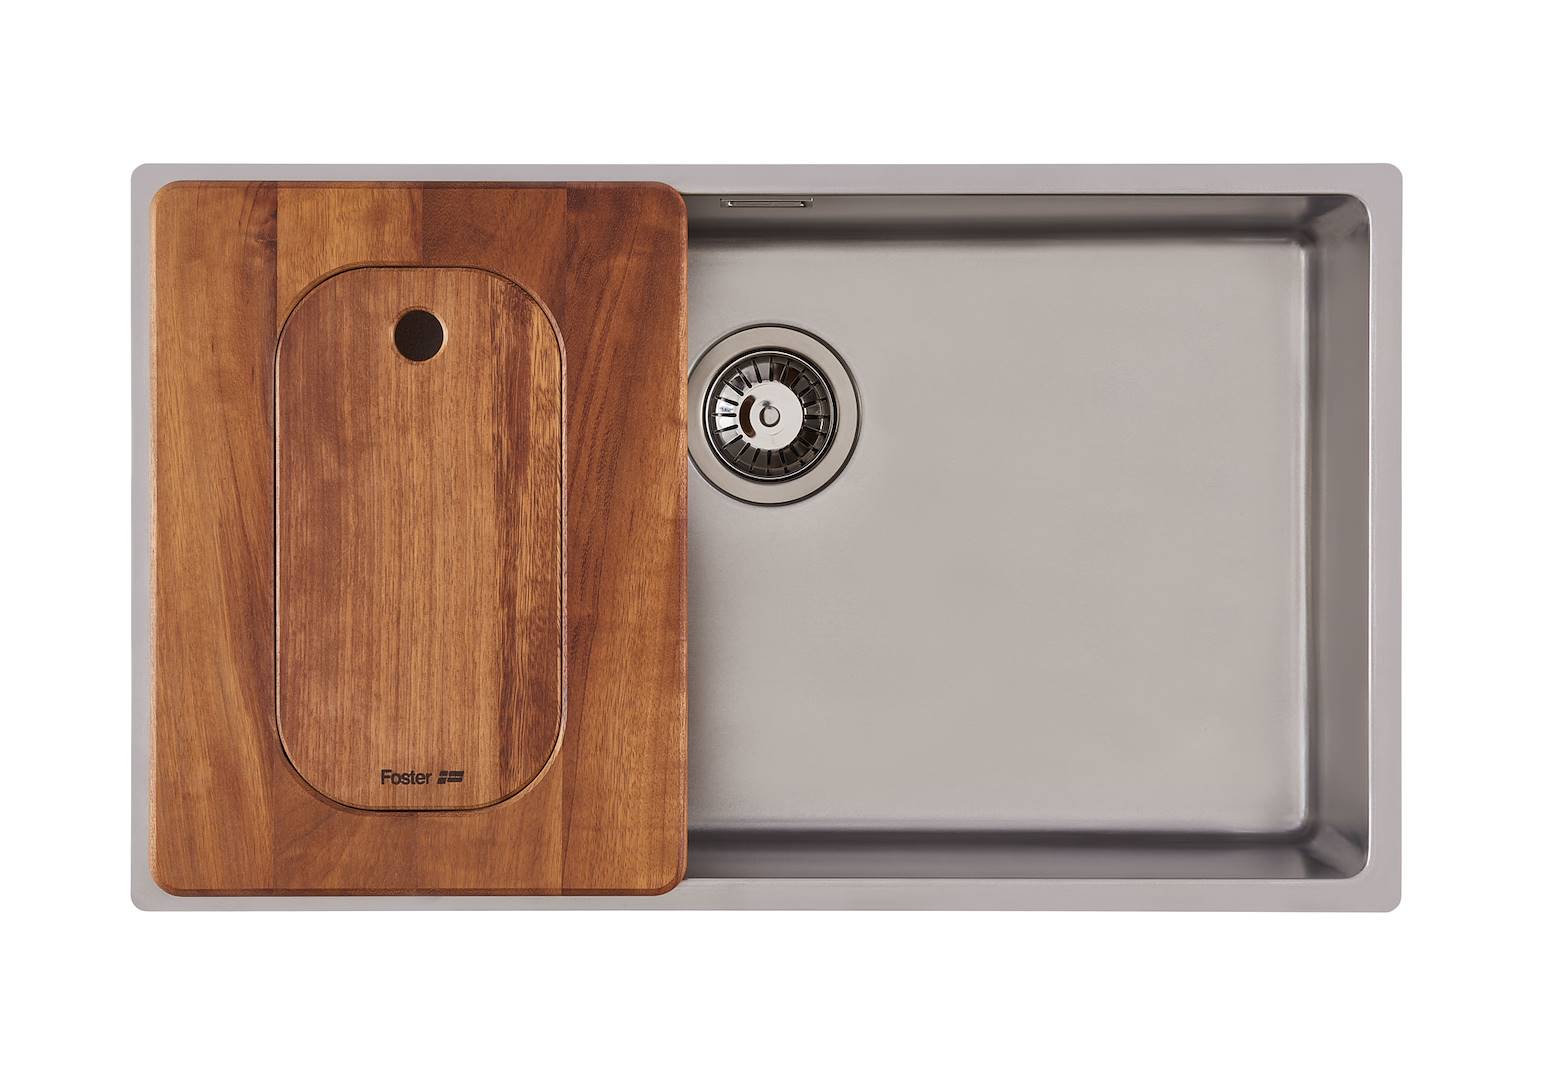 Tagliere Twin in legno Iroko con vaschetta scolapasta in acciaio inox,  Accessori e Complementi